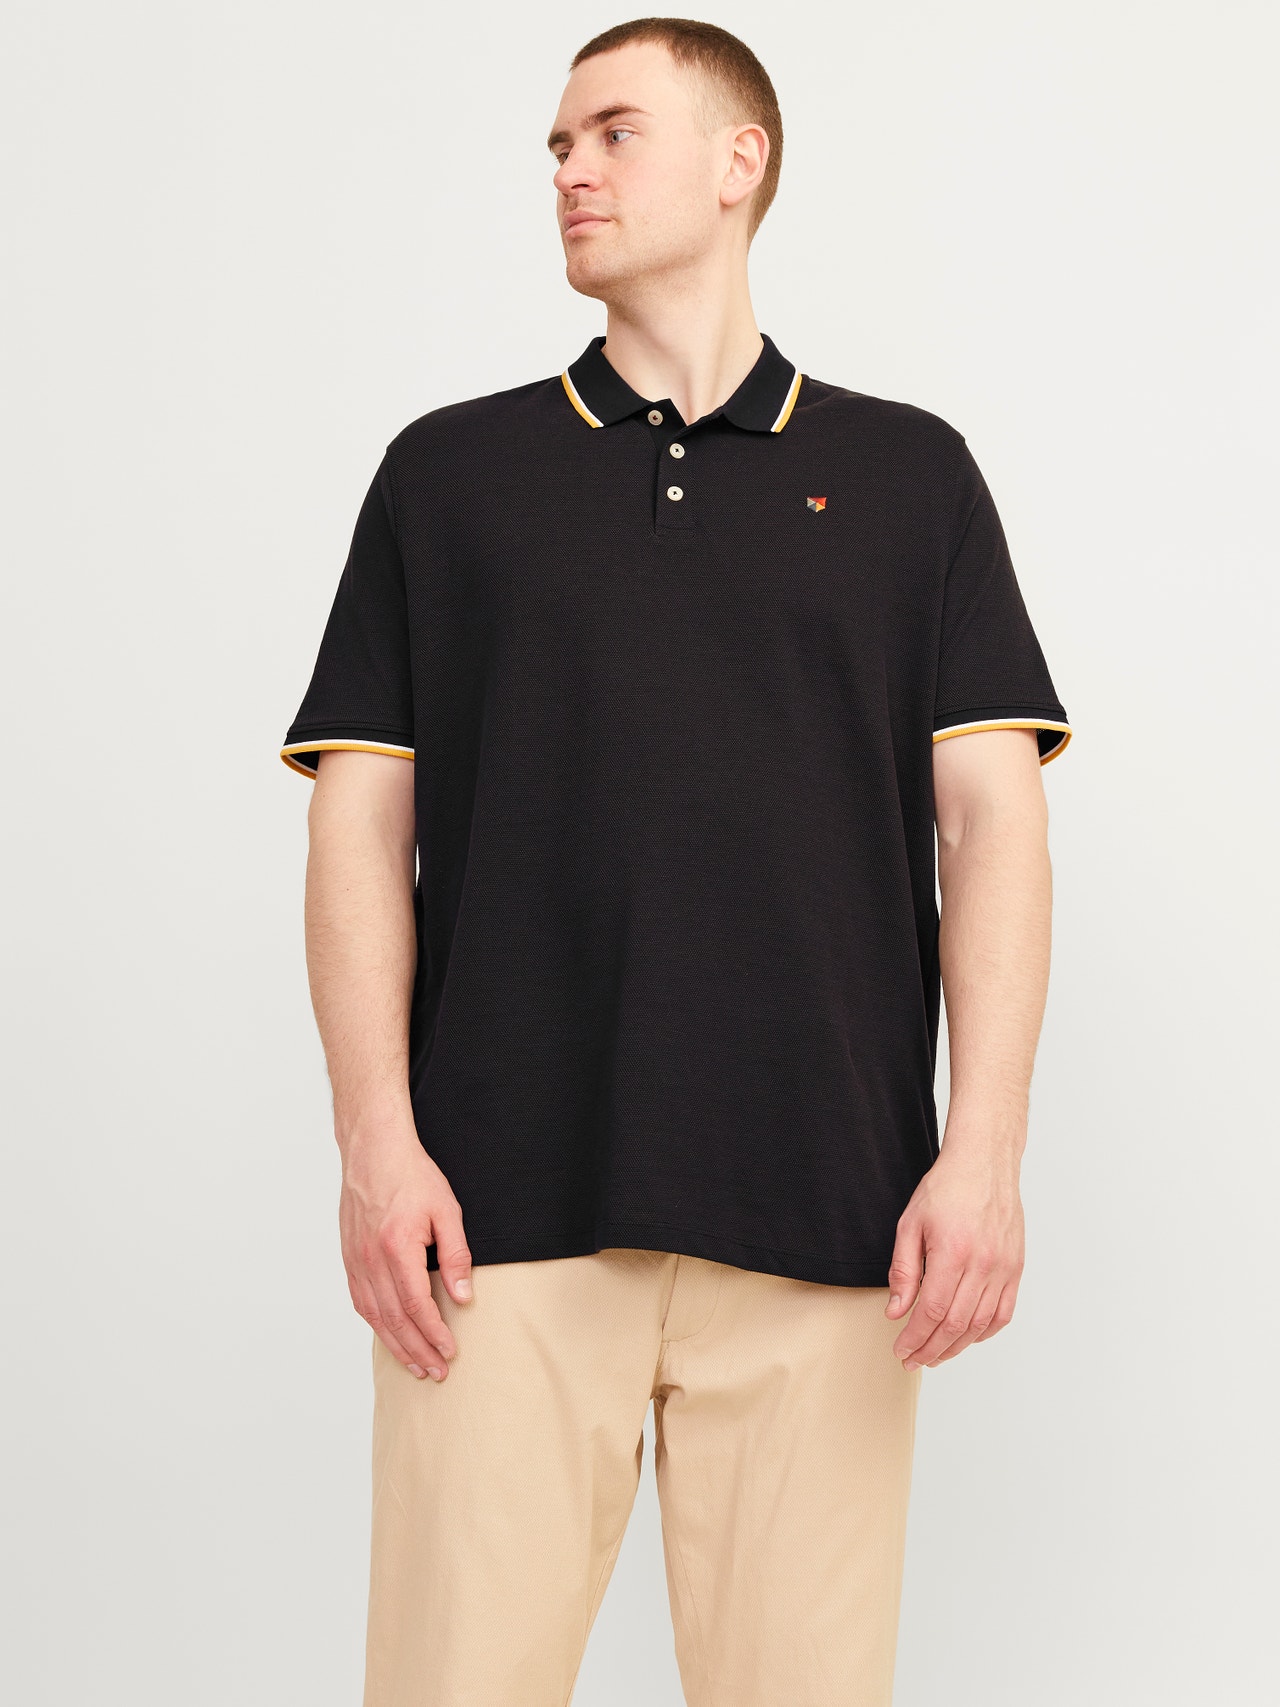 Jack & Jones Plus Size Gładki T-shirt -Black - 12236435